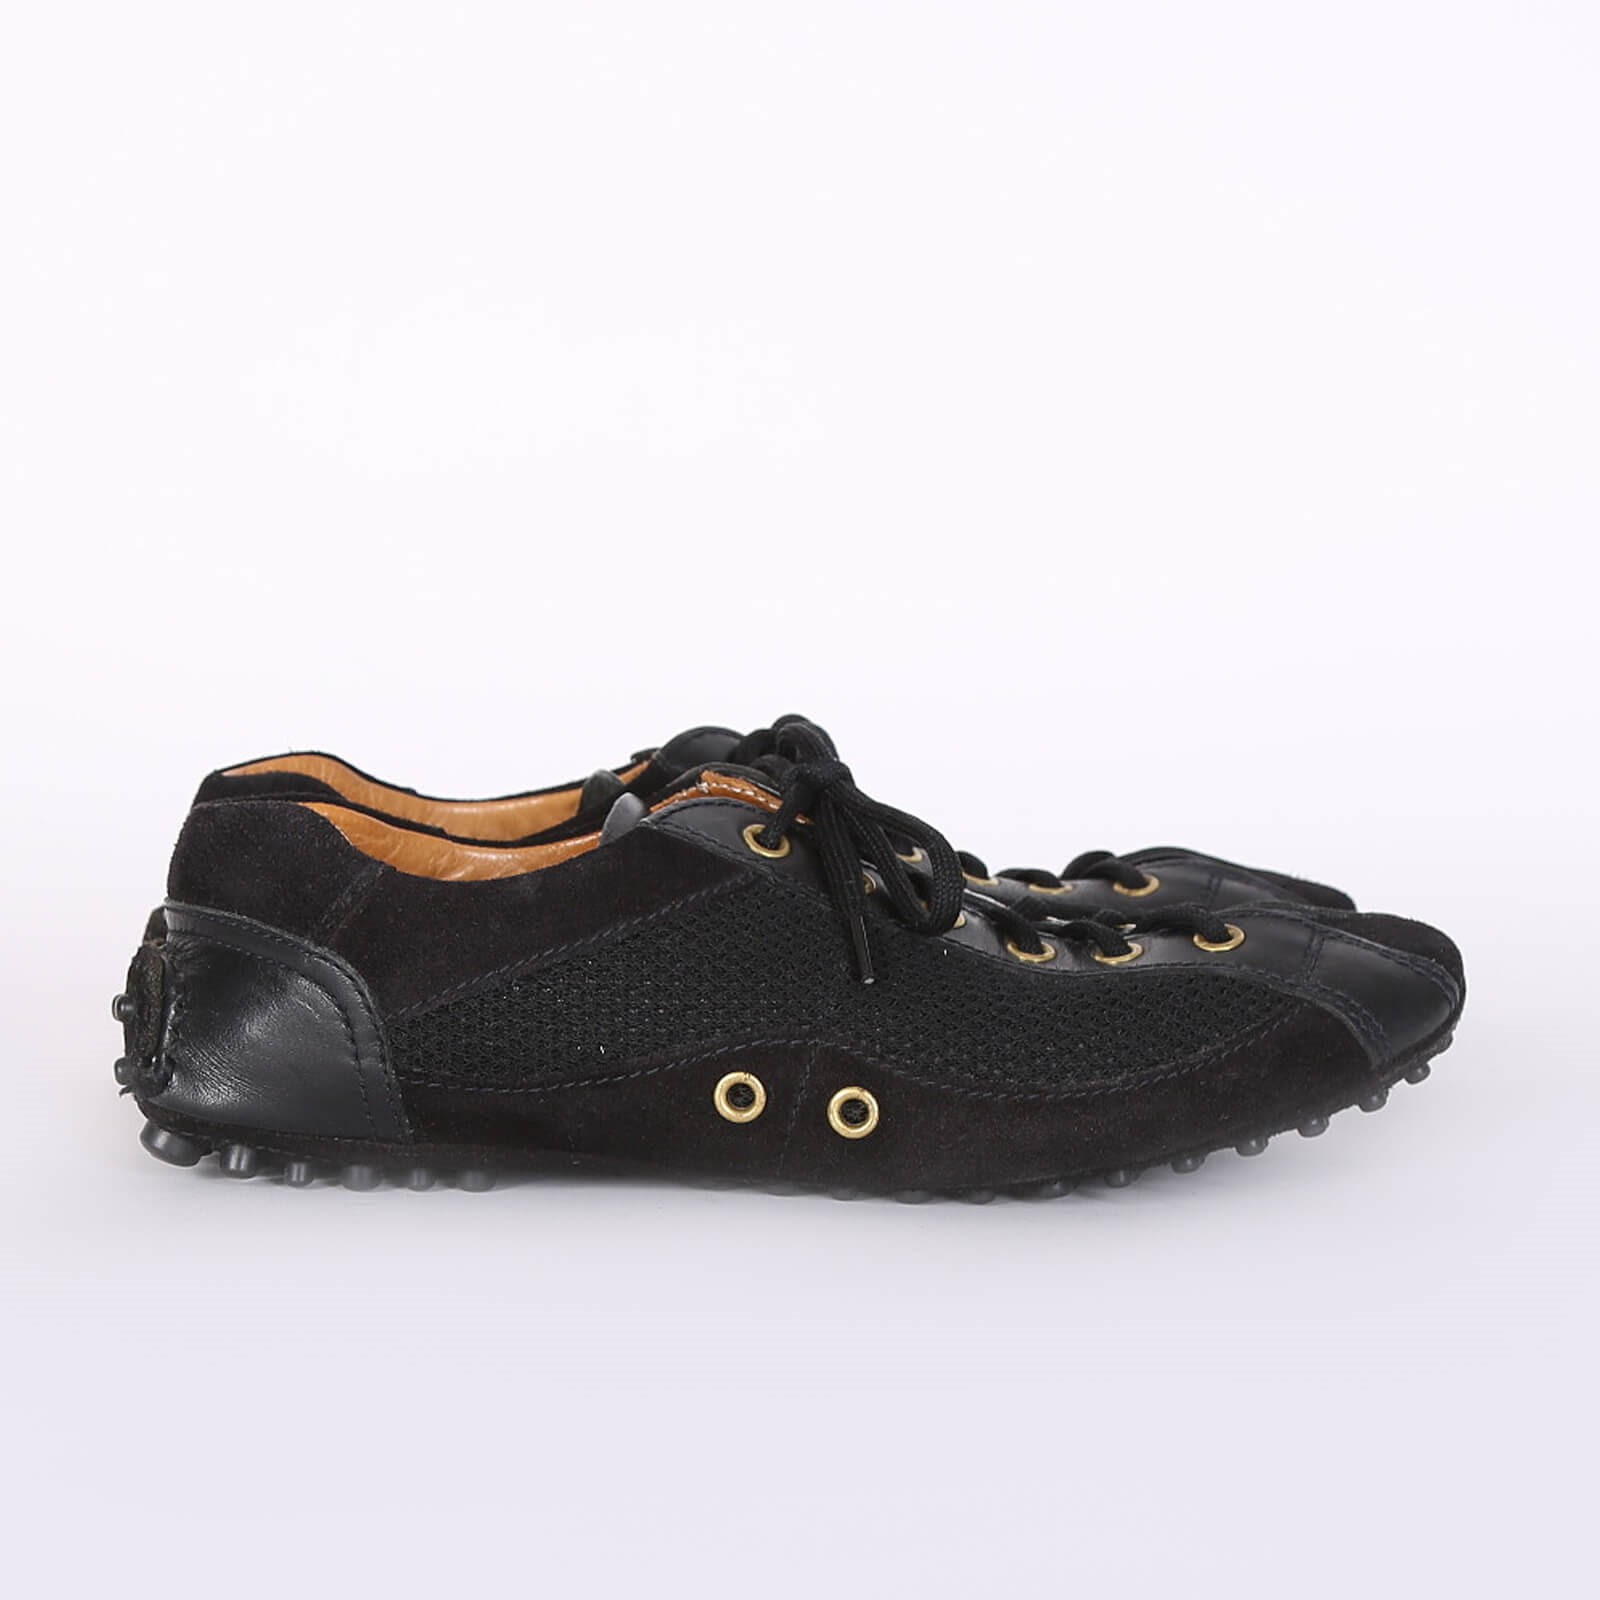 Prada - Car Shoe Leather Driving Sneakers Black 35 